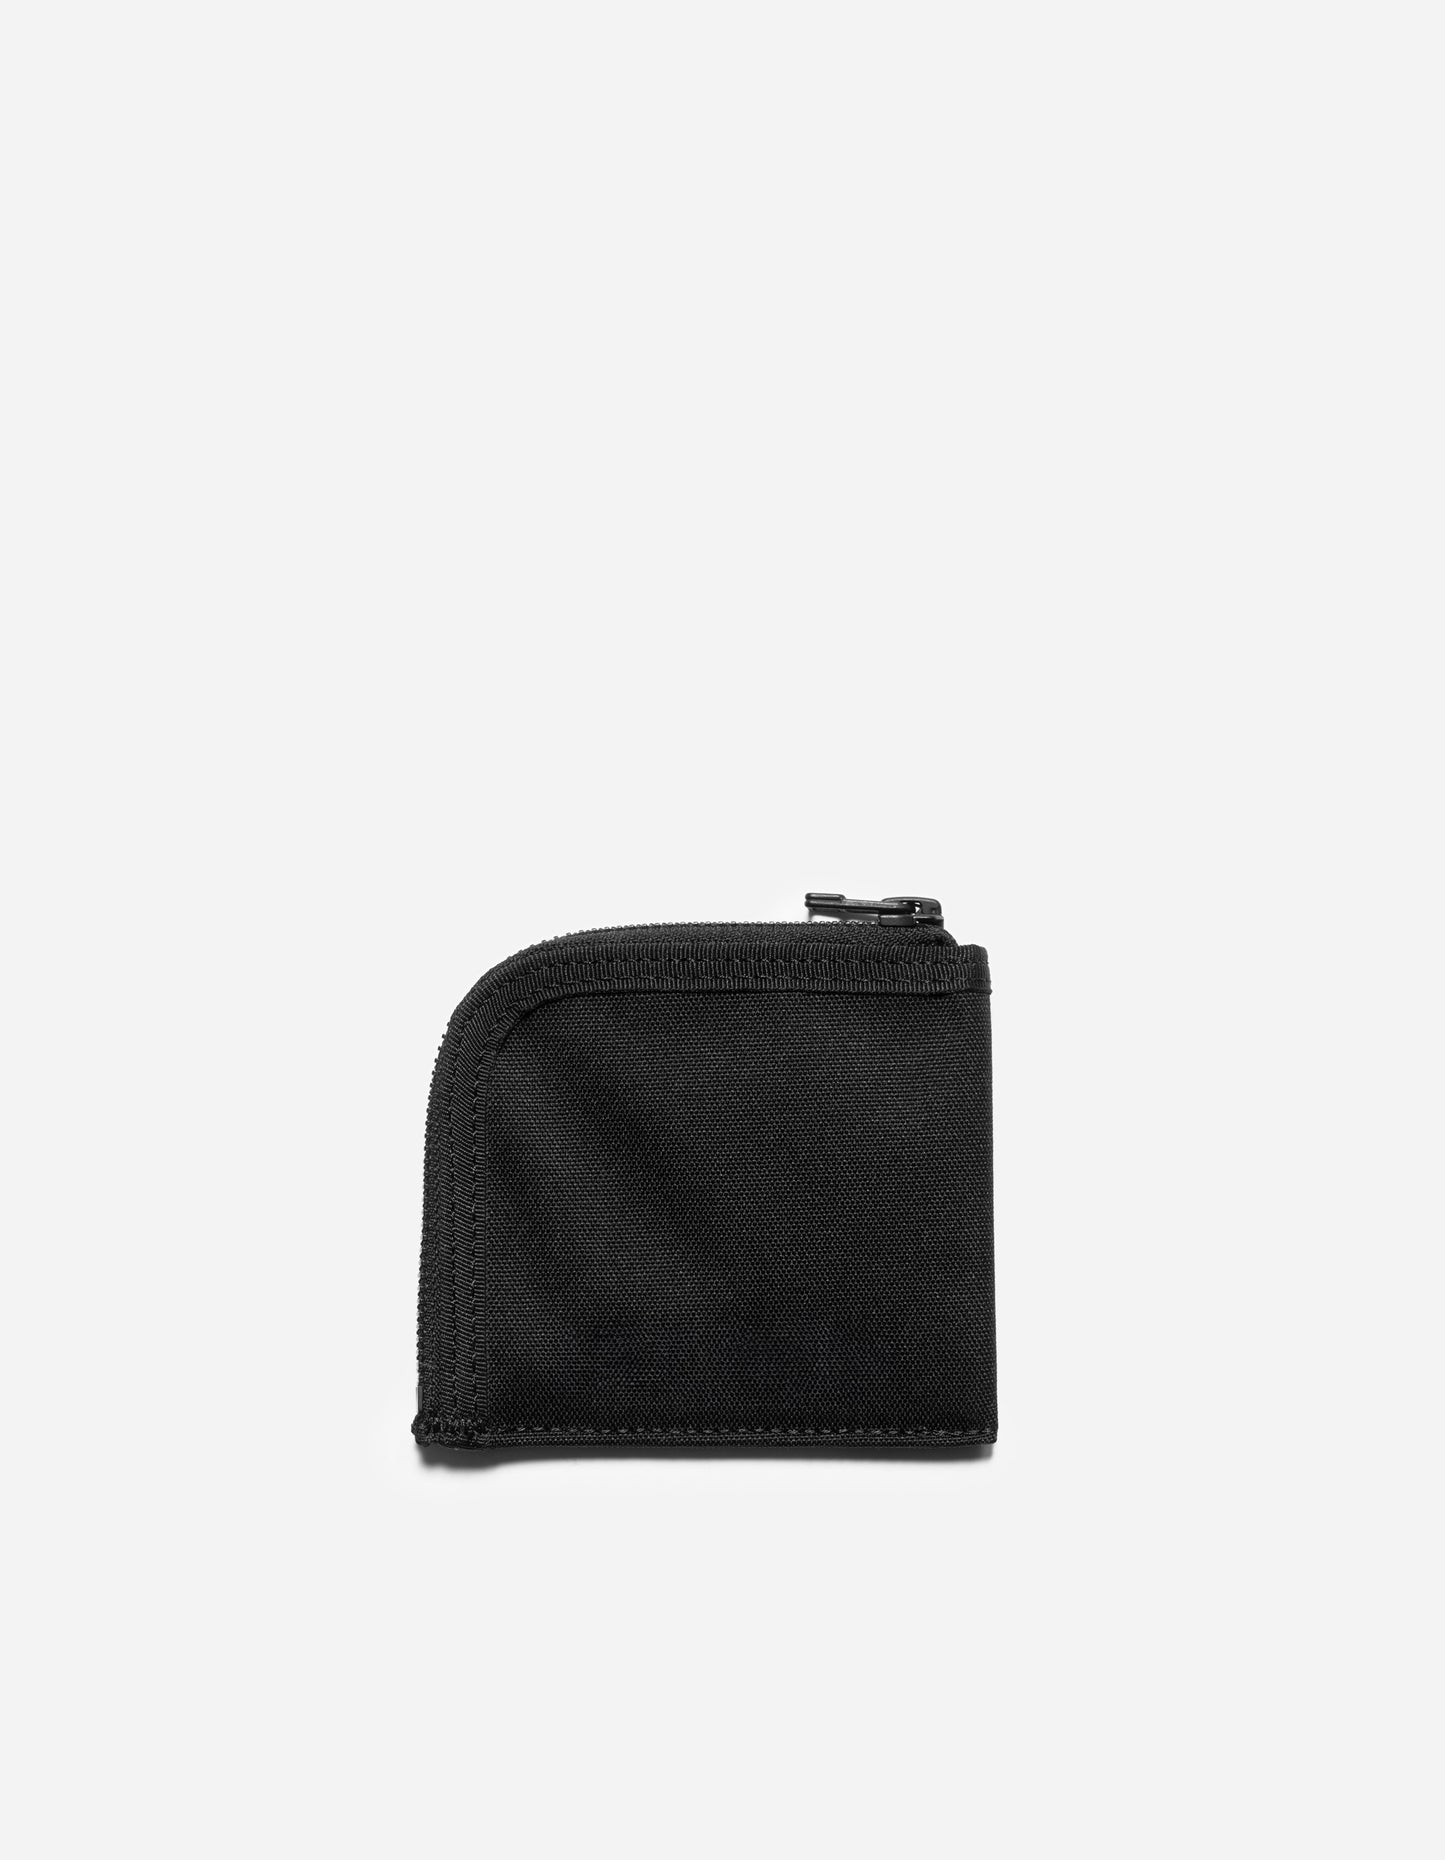 9112 Wallet Black · 600D Nylon